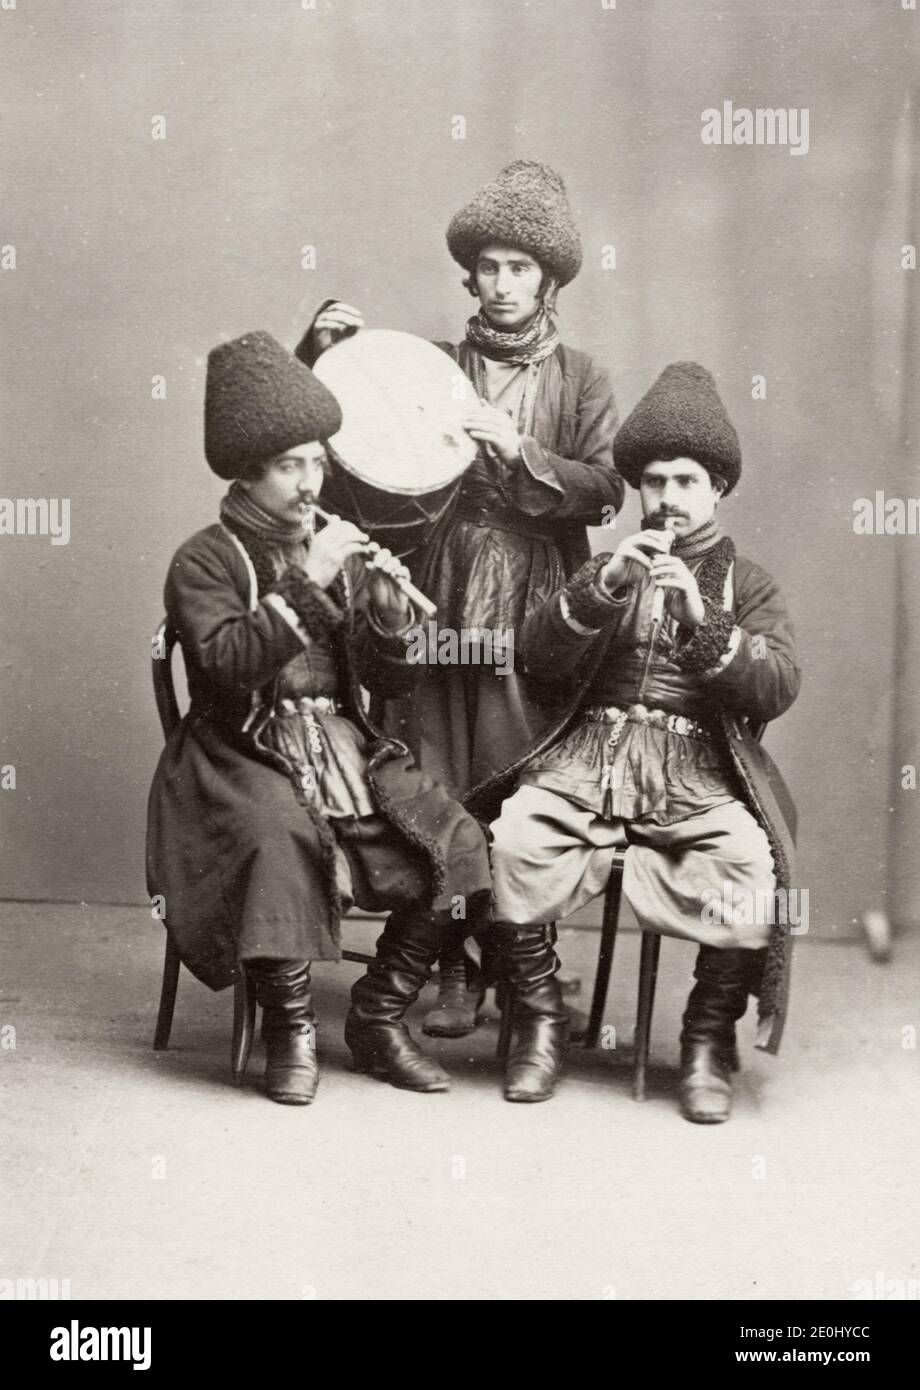 Photographie du XIXe siècle - minstrels persans, musiciens, Asie centrale, vers 1880. Banque D'Images